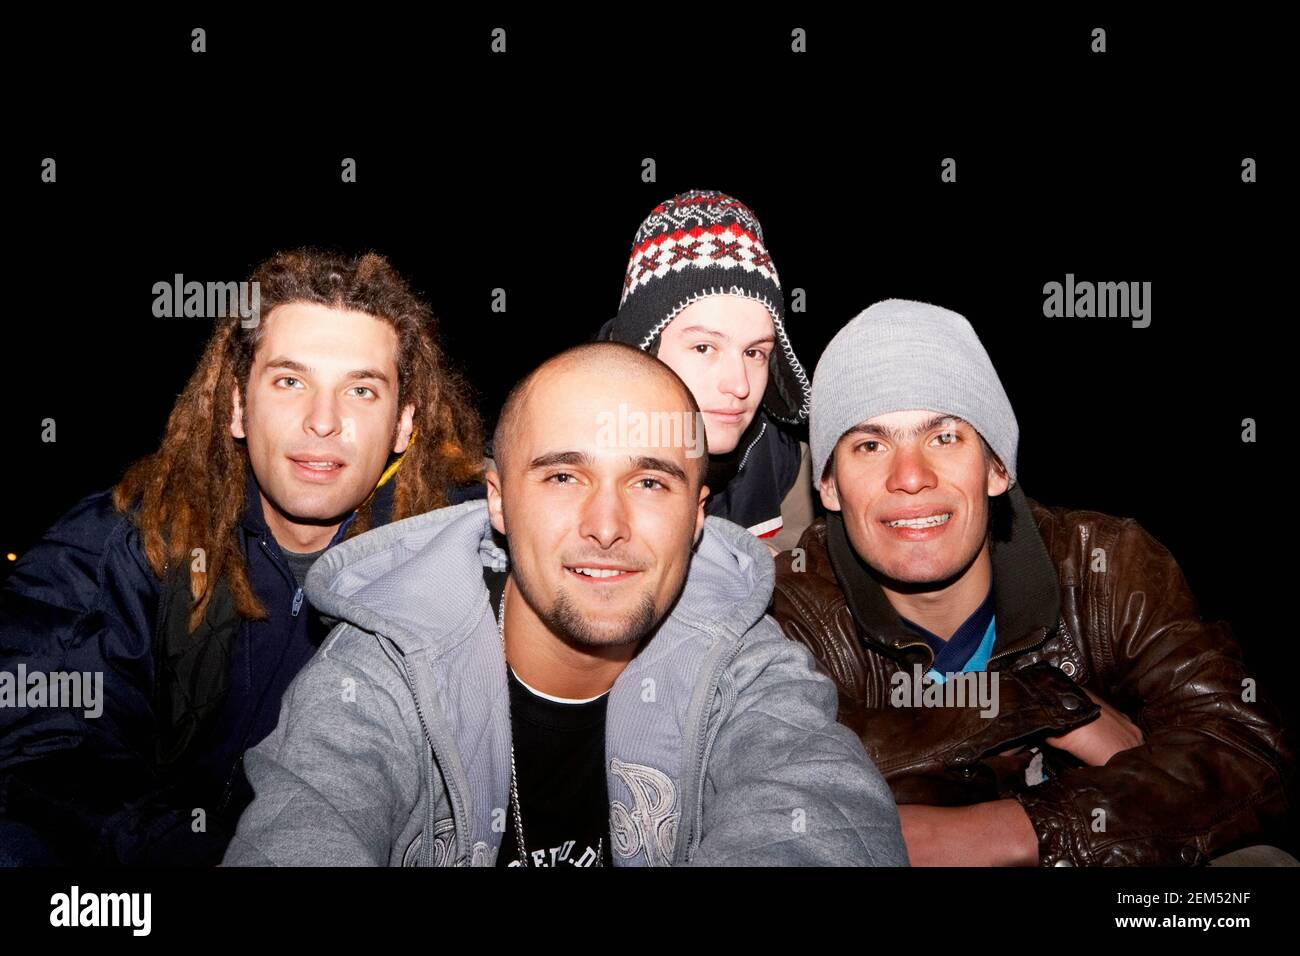 Ritratto di quattro giovani uomini sorridenti Foto Stock